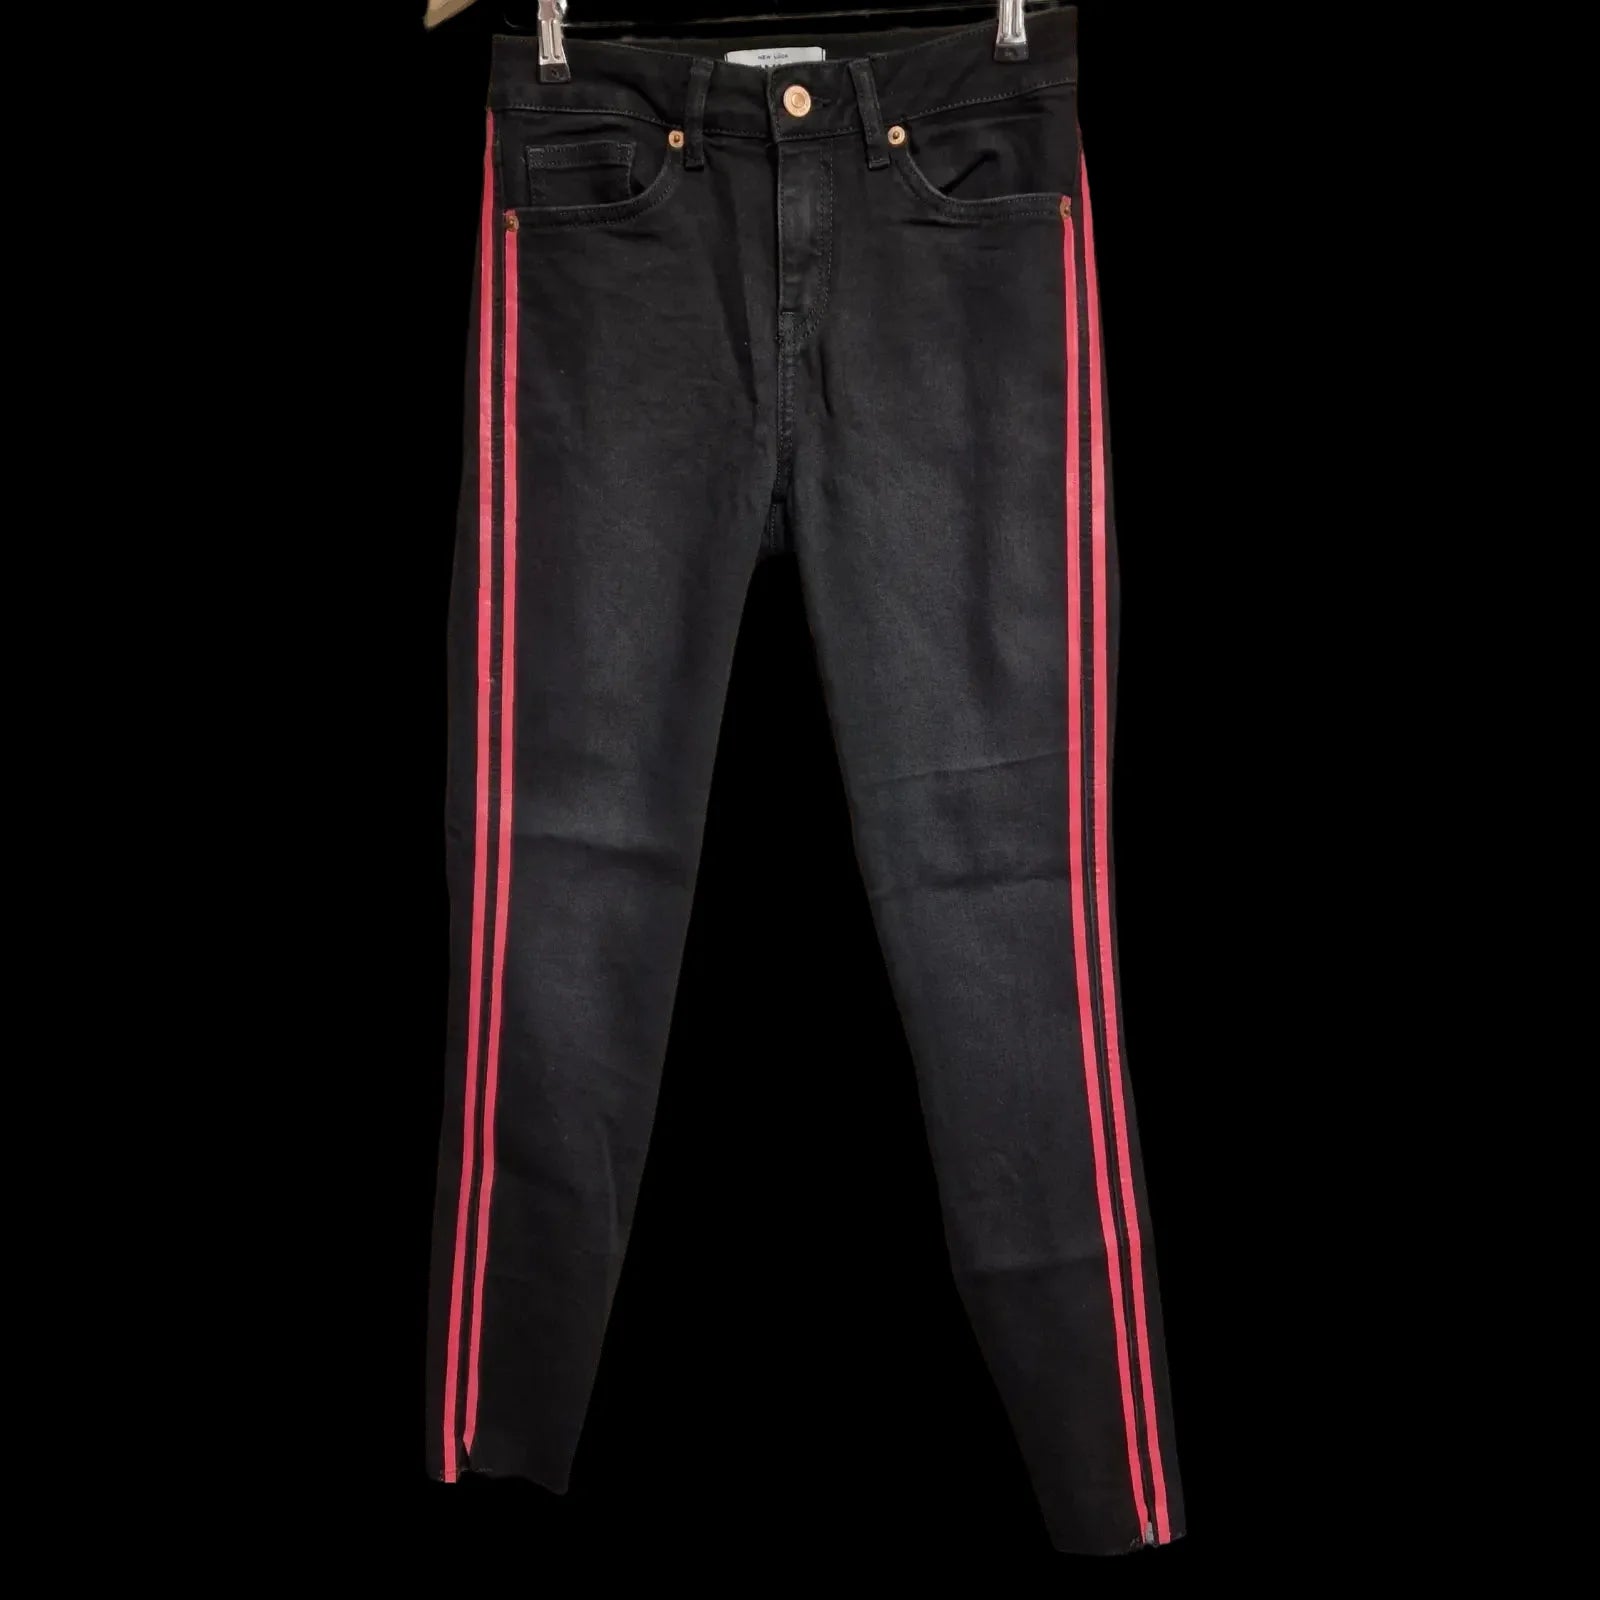 Womens New Look Black Pink Skinny Jeans Uk8 - 1 - 961